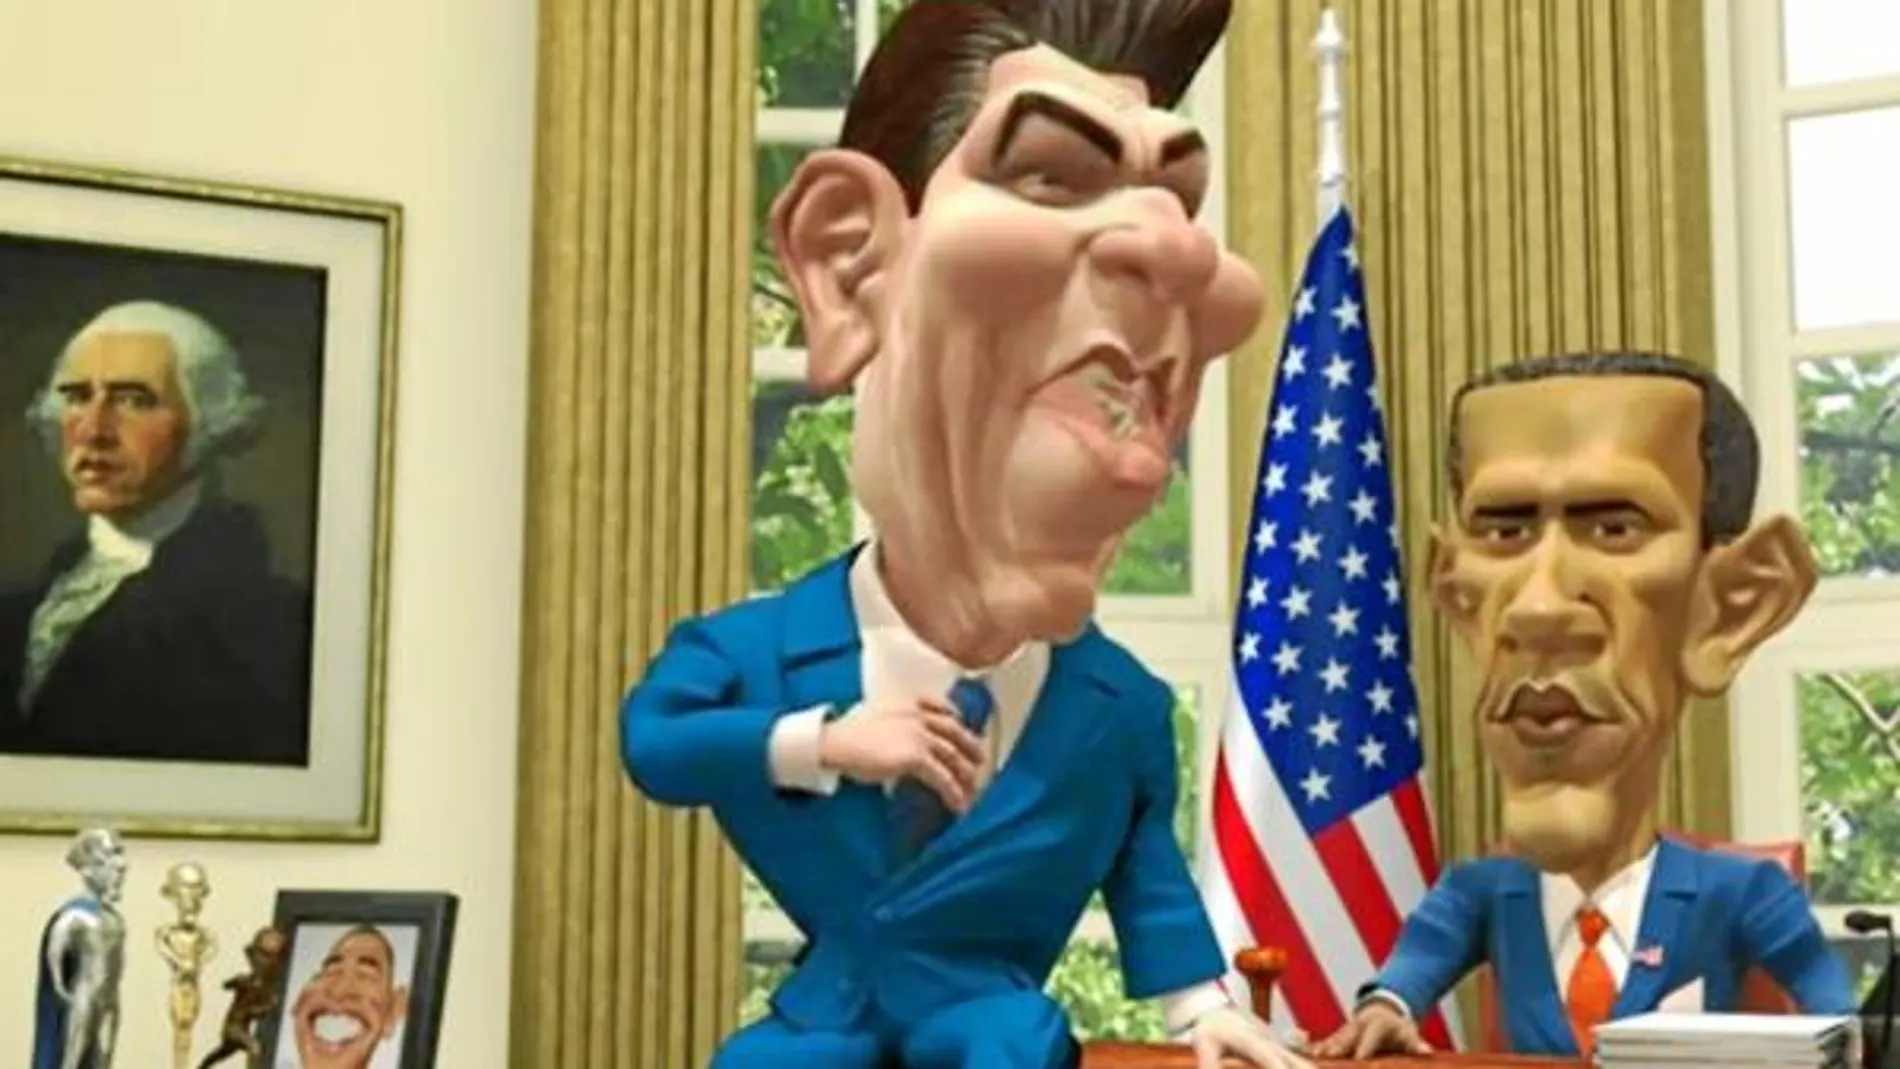 Ronald Reagan intenta aconsejar a Obama en el Despacho Oval, en una secuencia de la película